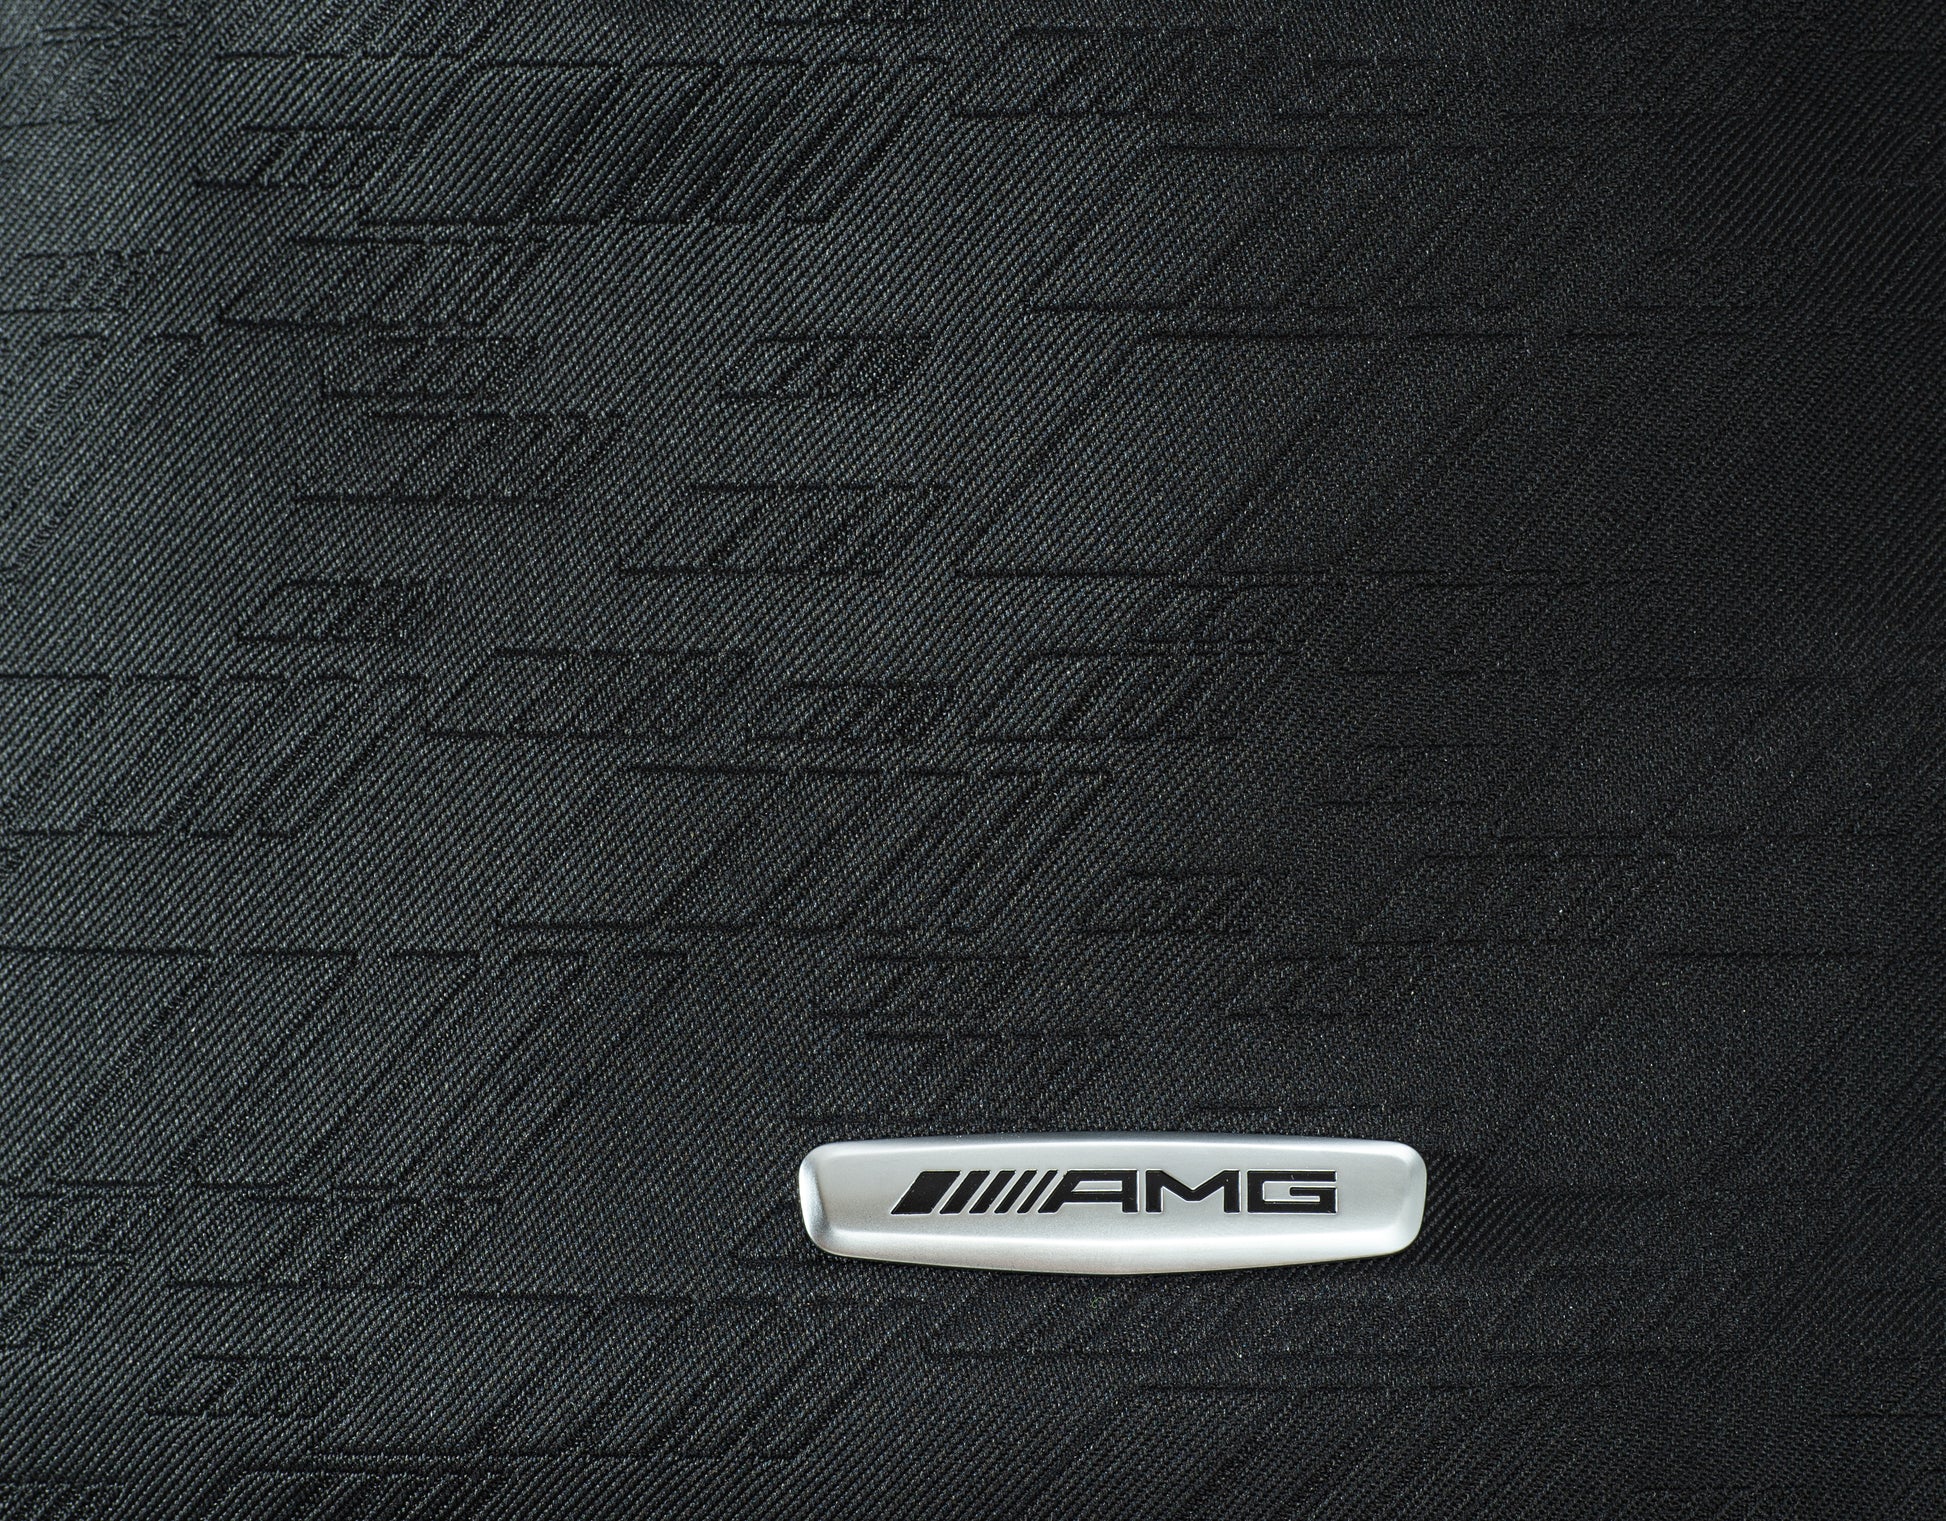 Schwarzer Stoff mit Mercedes-AMG Plakette